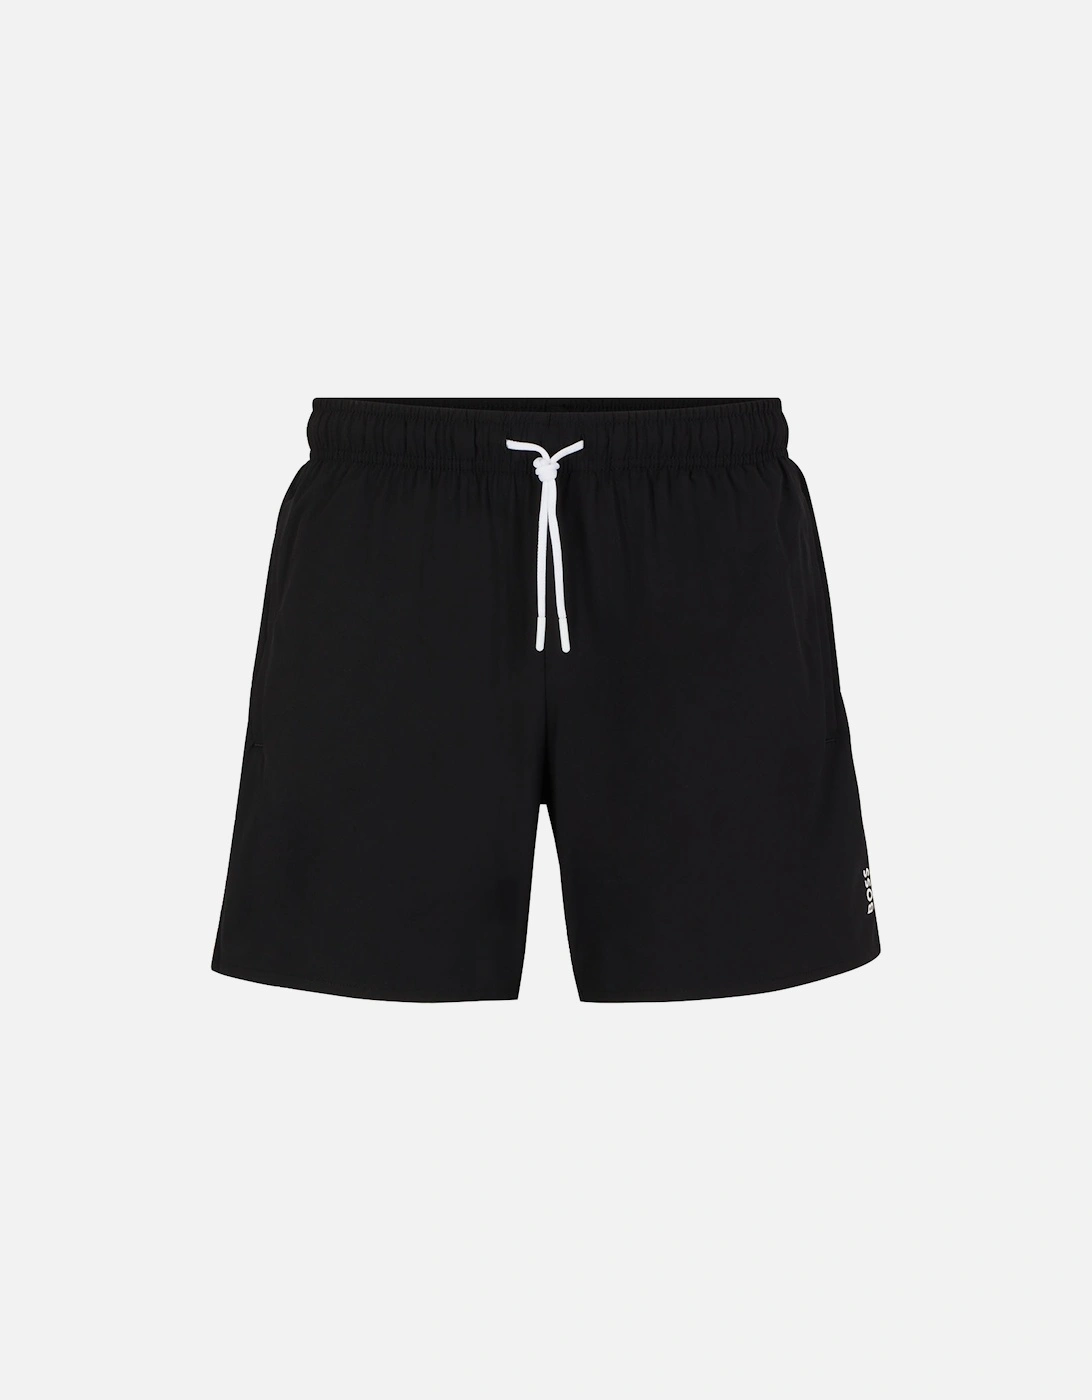 Iconic Swim Shorts, Black, 5 of 4